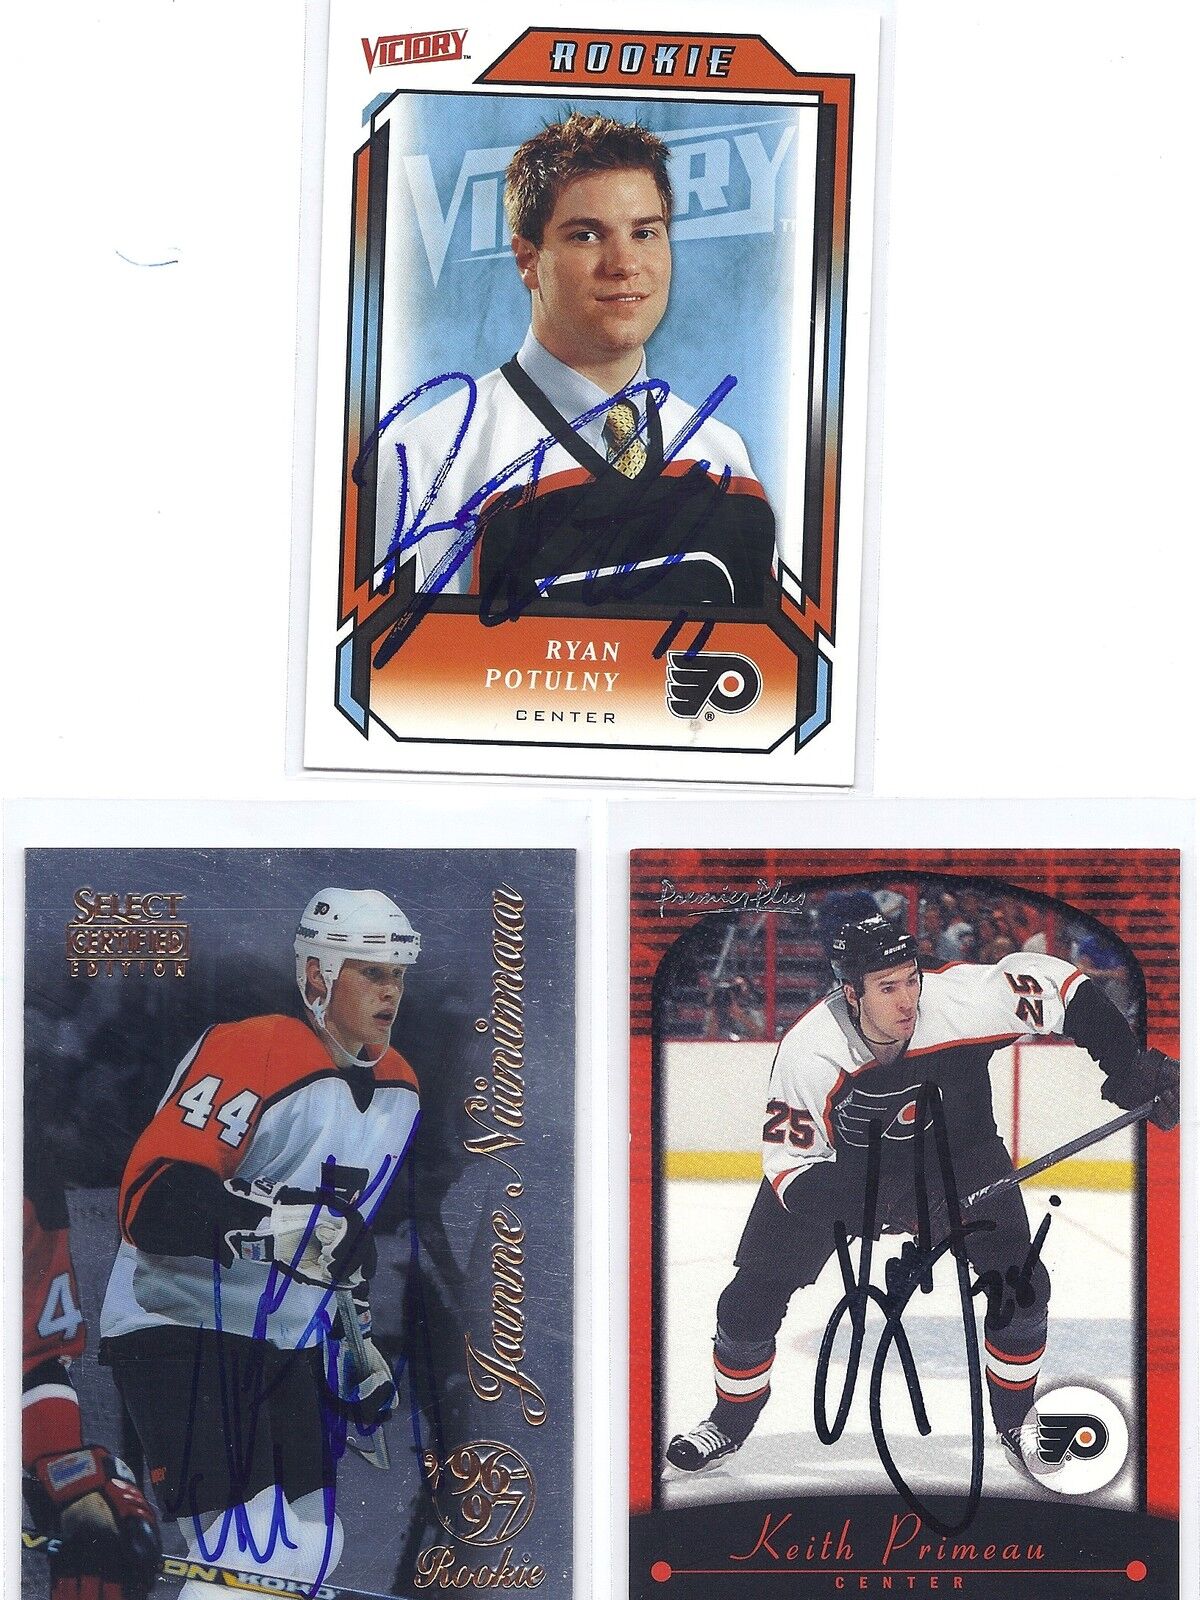 2000-01 Topps #81 Keith primeau Philadelphia Flyers Autographed Hockey Card